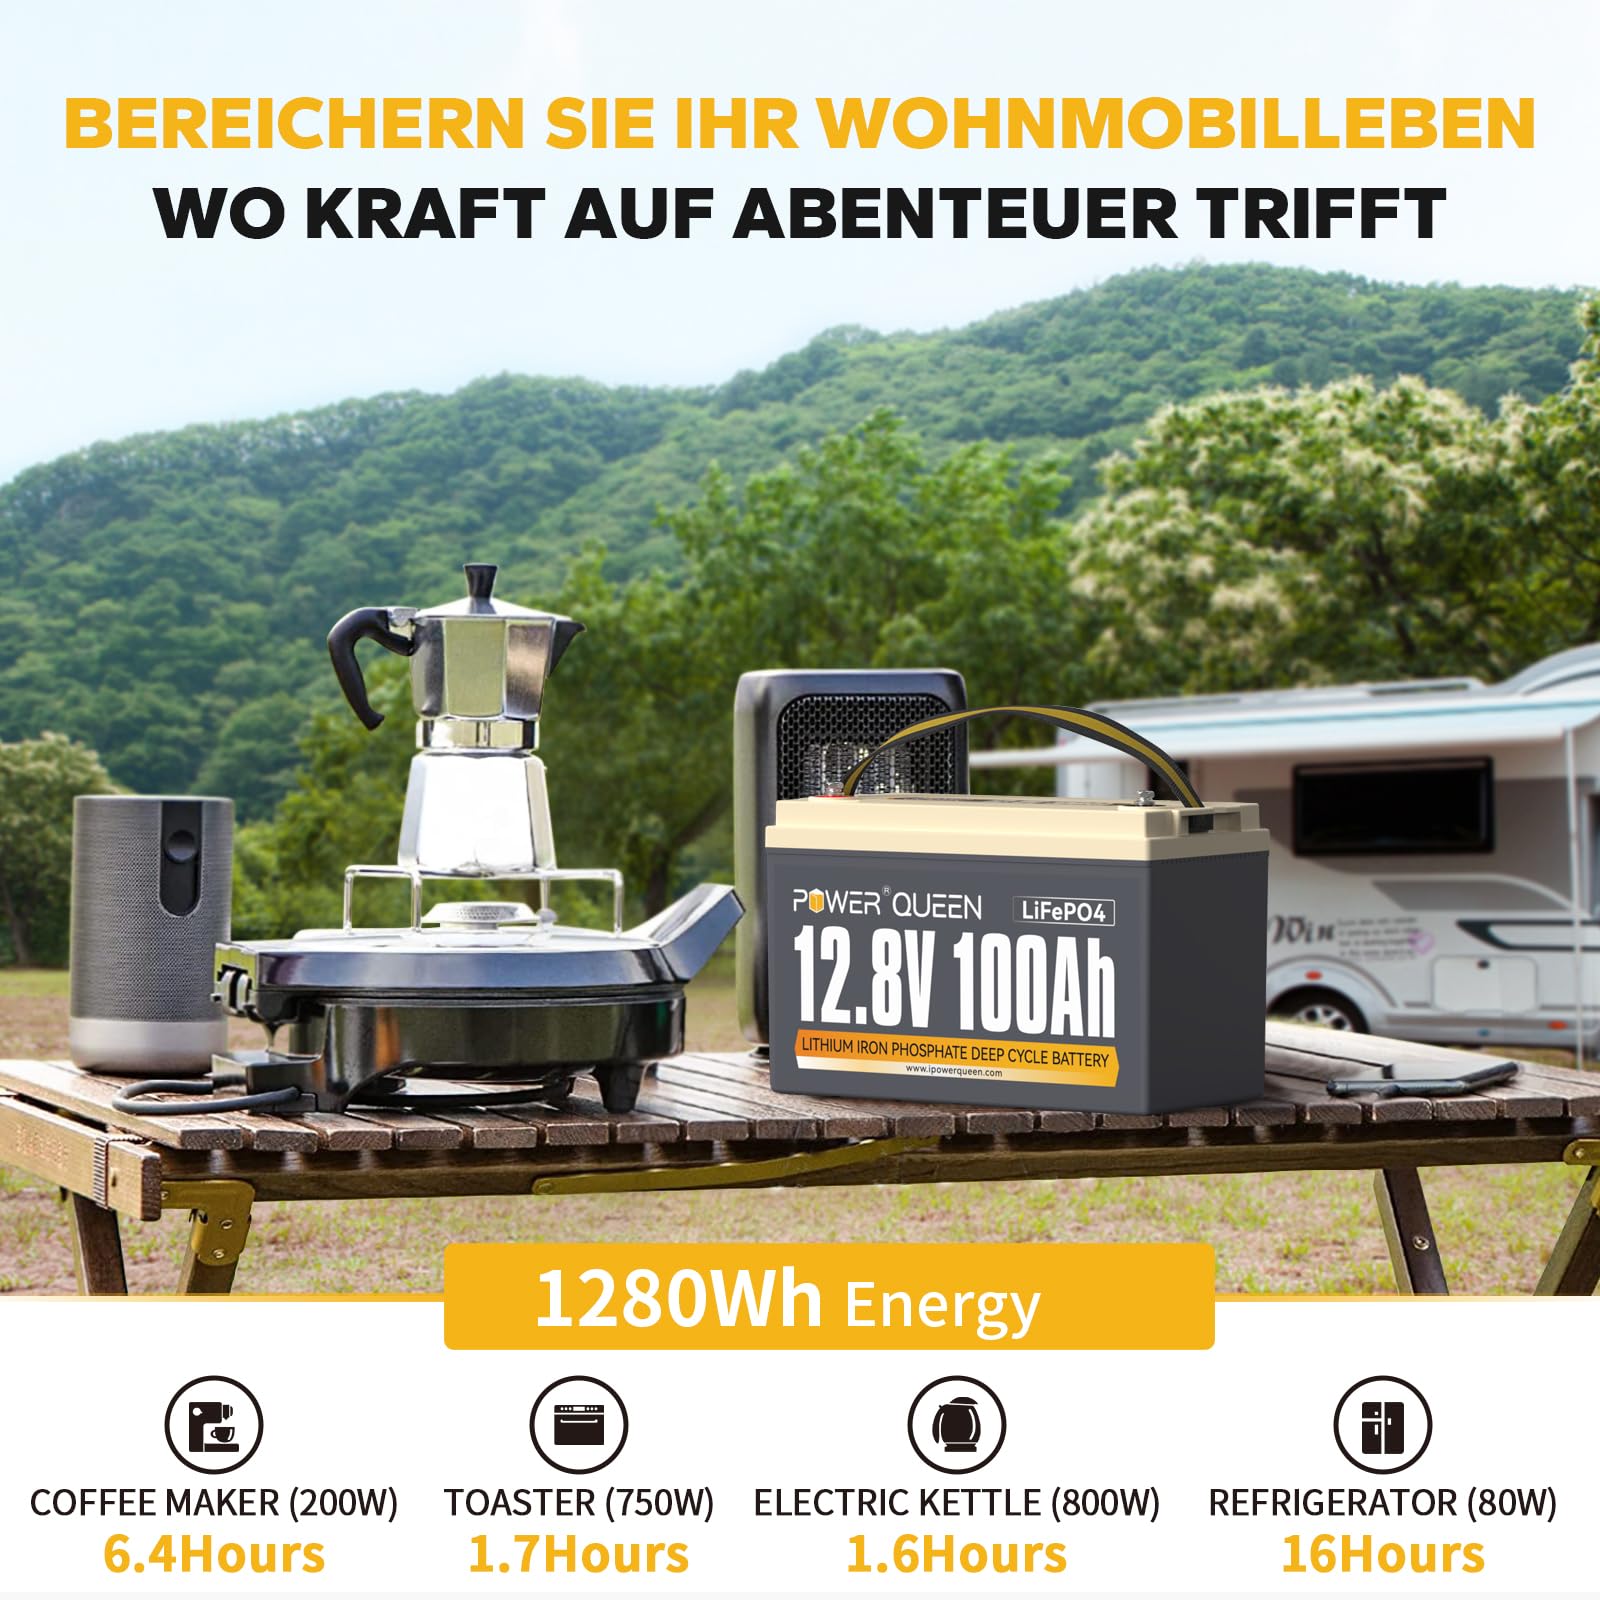 1280Wh Energie für Abenteuer 12,8V 100Ah Lithium Batterie